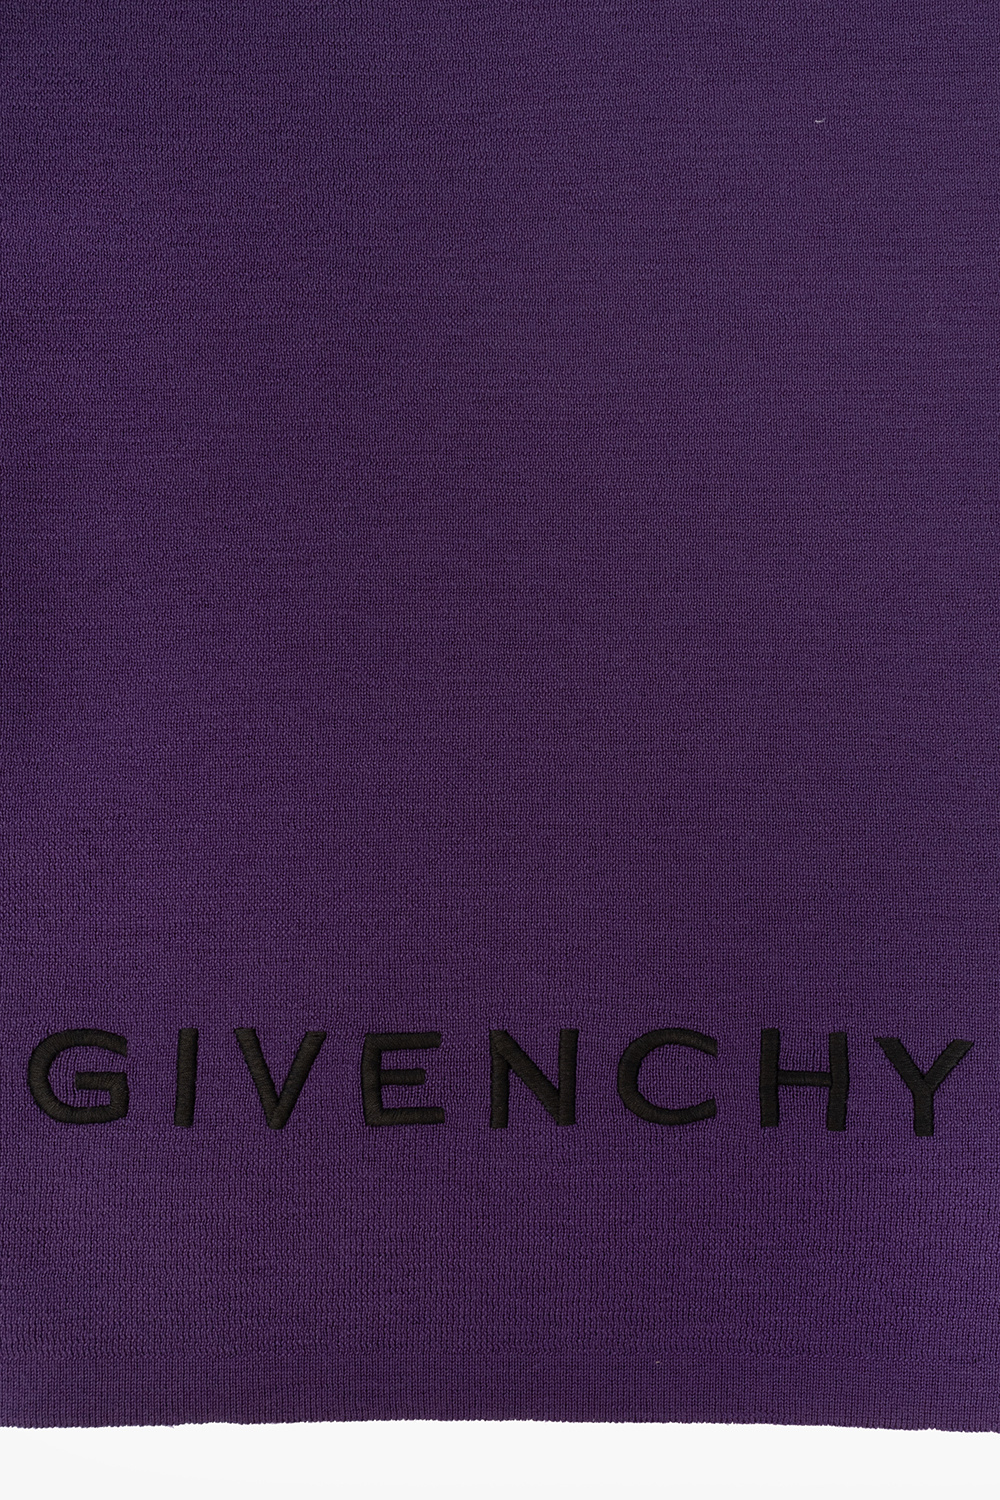 Givenchy mens givenchy hoodies